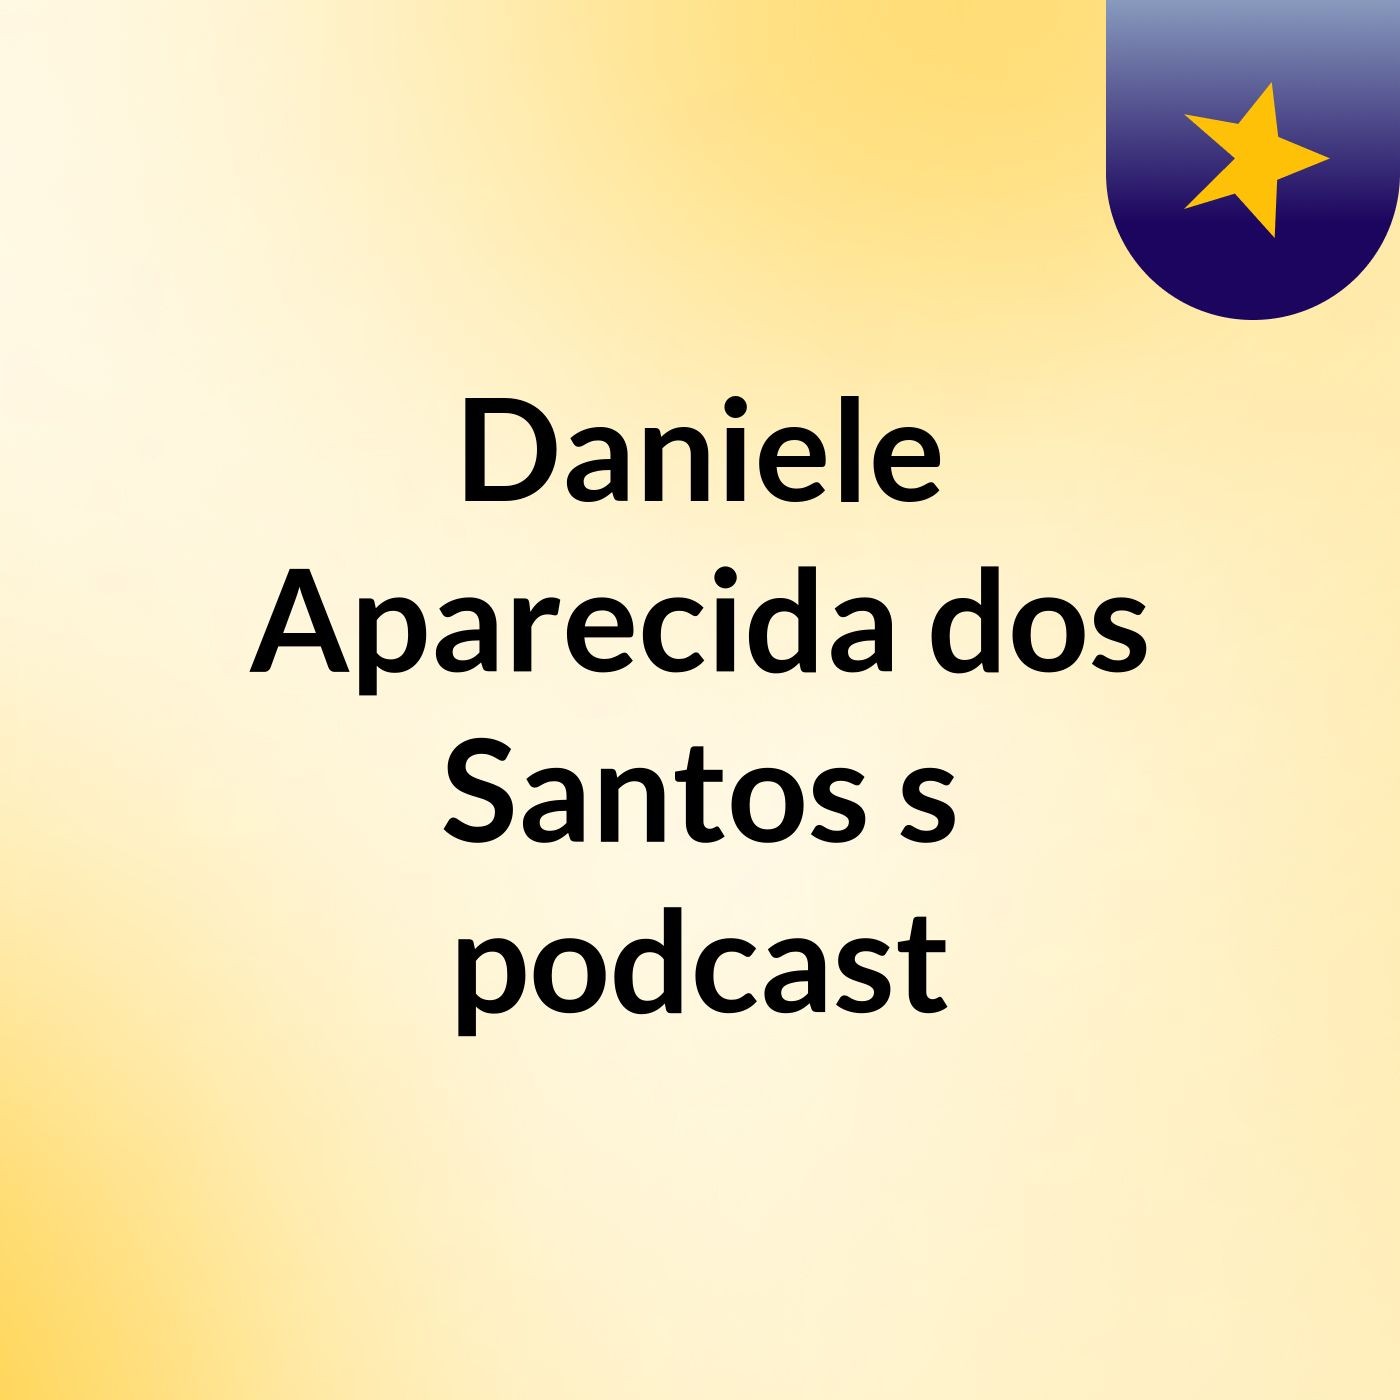 Daniele Aparecida dos Santos's podcast